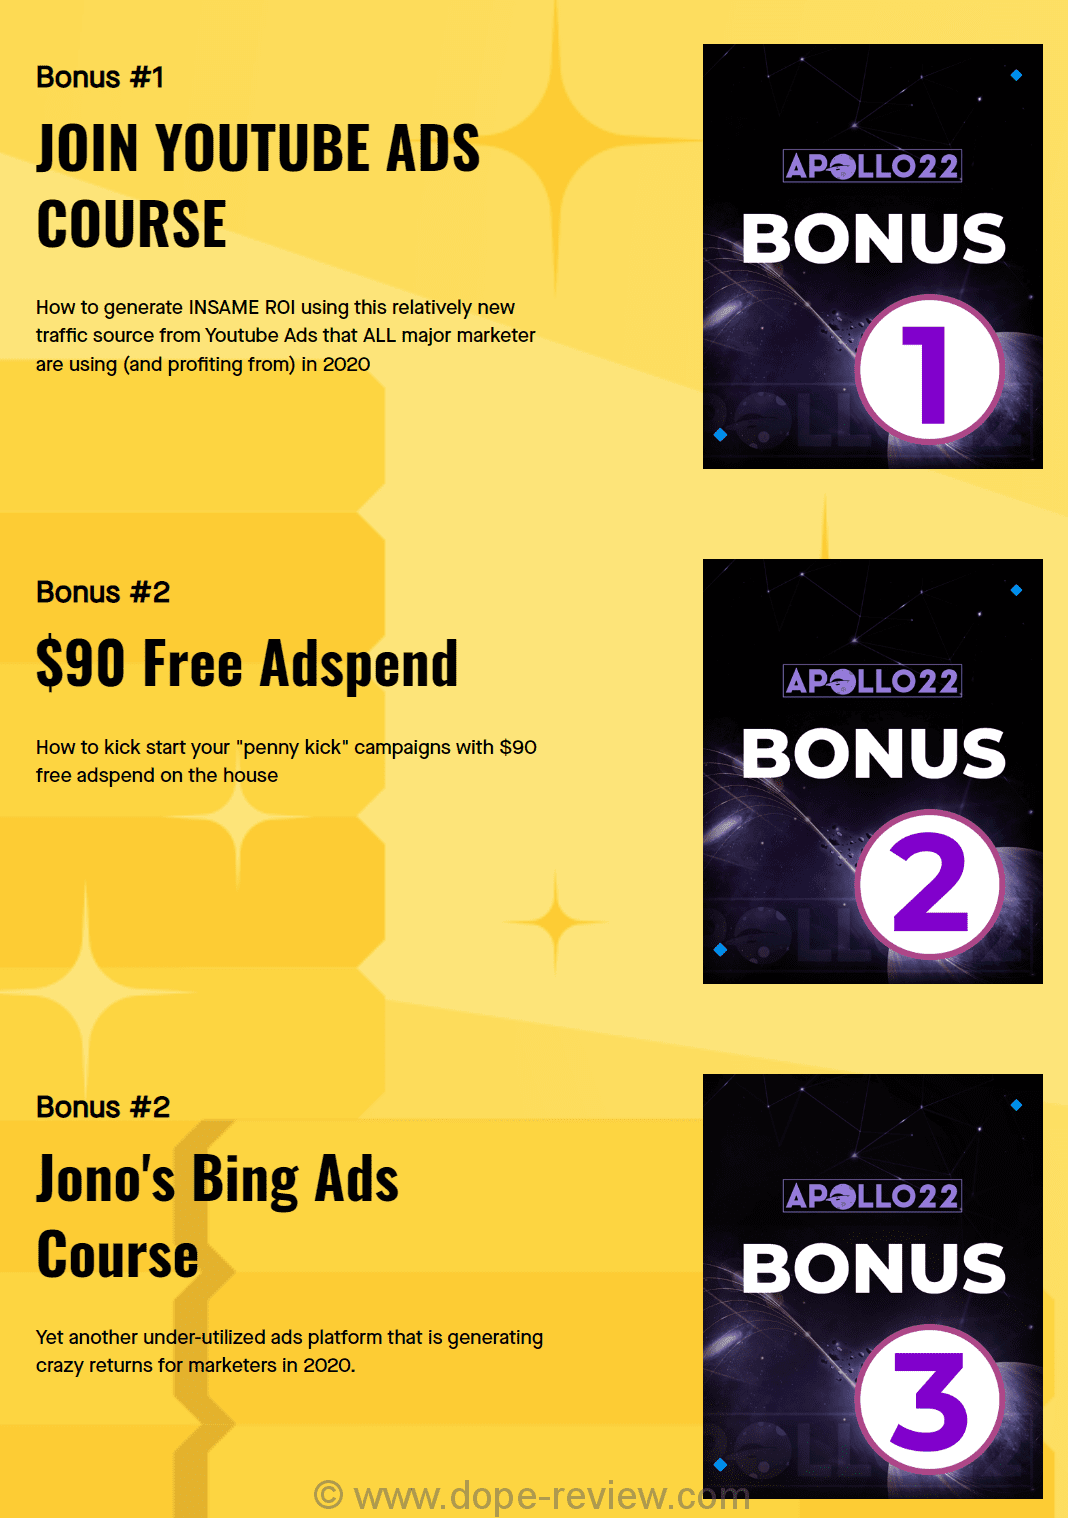 Apollo22 Bonus